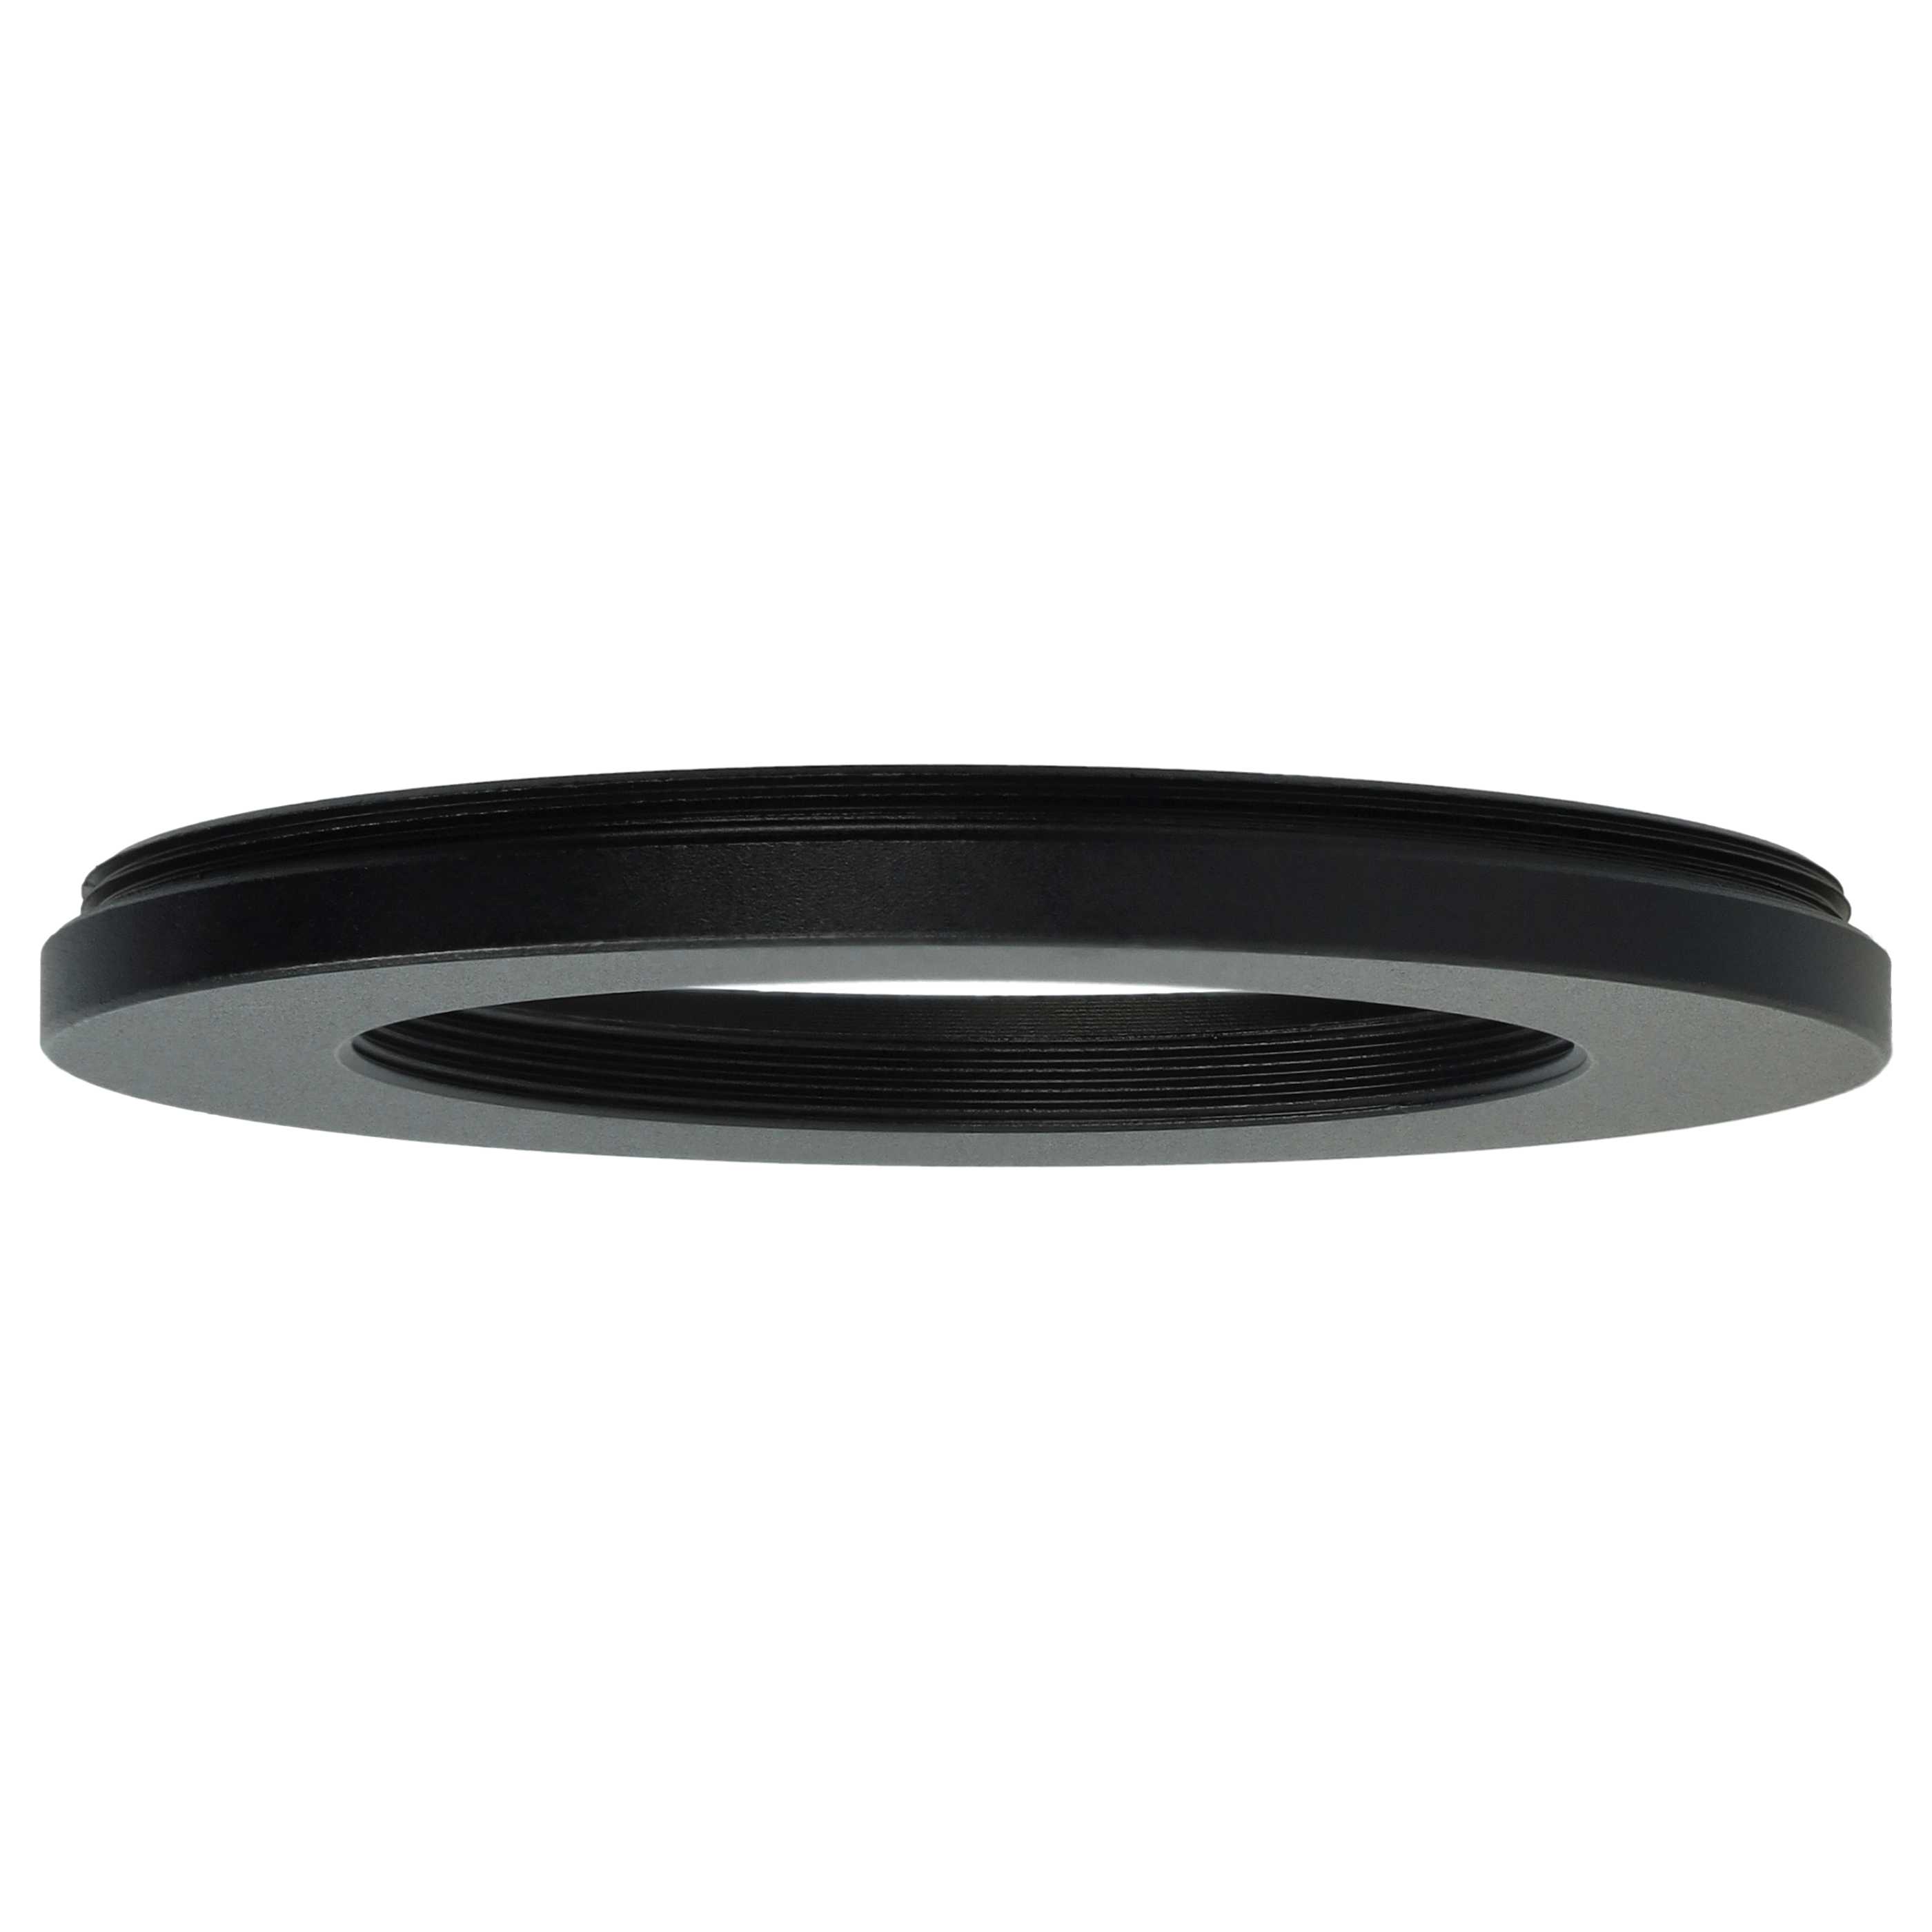 Anello adattatore step-down da 62 mm a 43 mm per obiettivo fotocamera - Adattatore filtro, metallo, nero